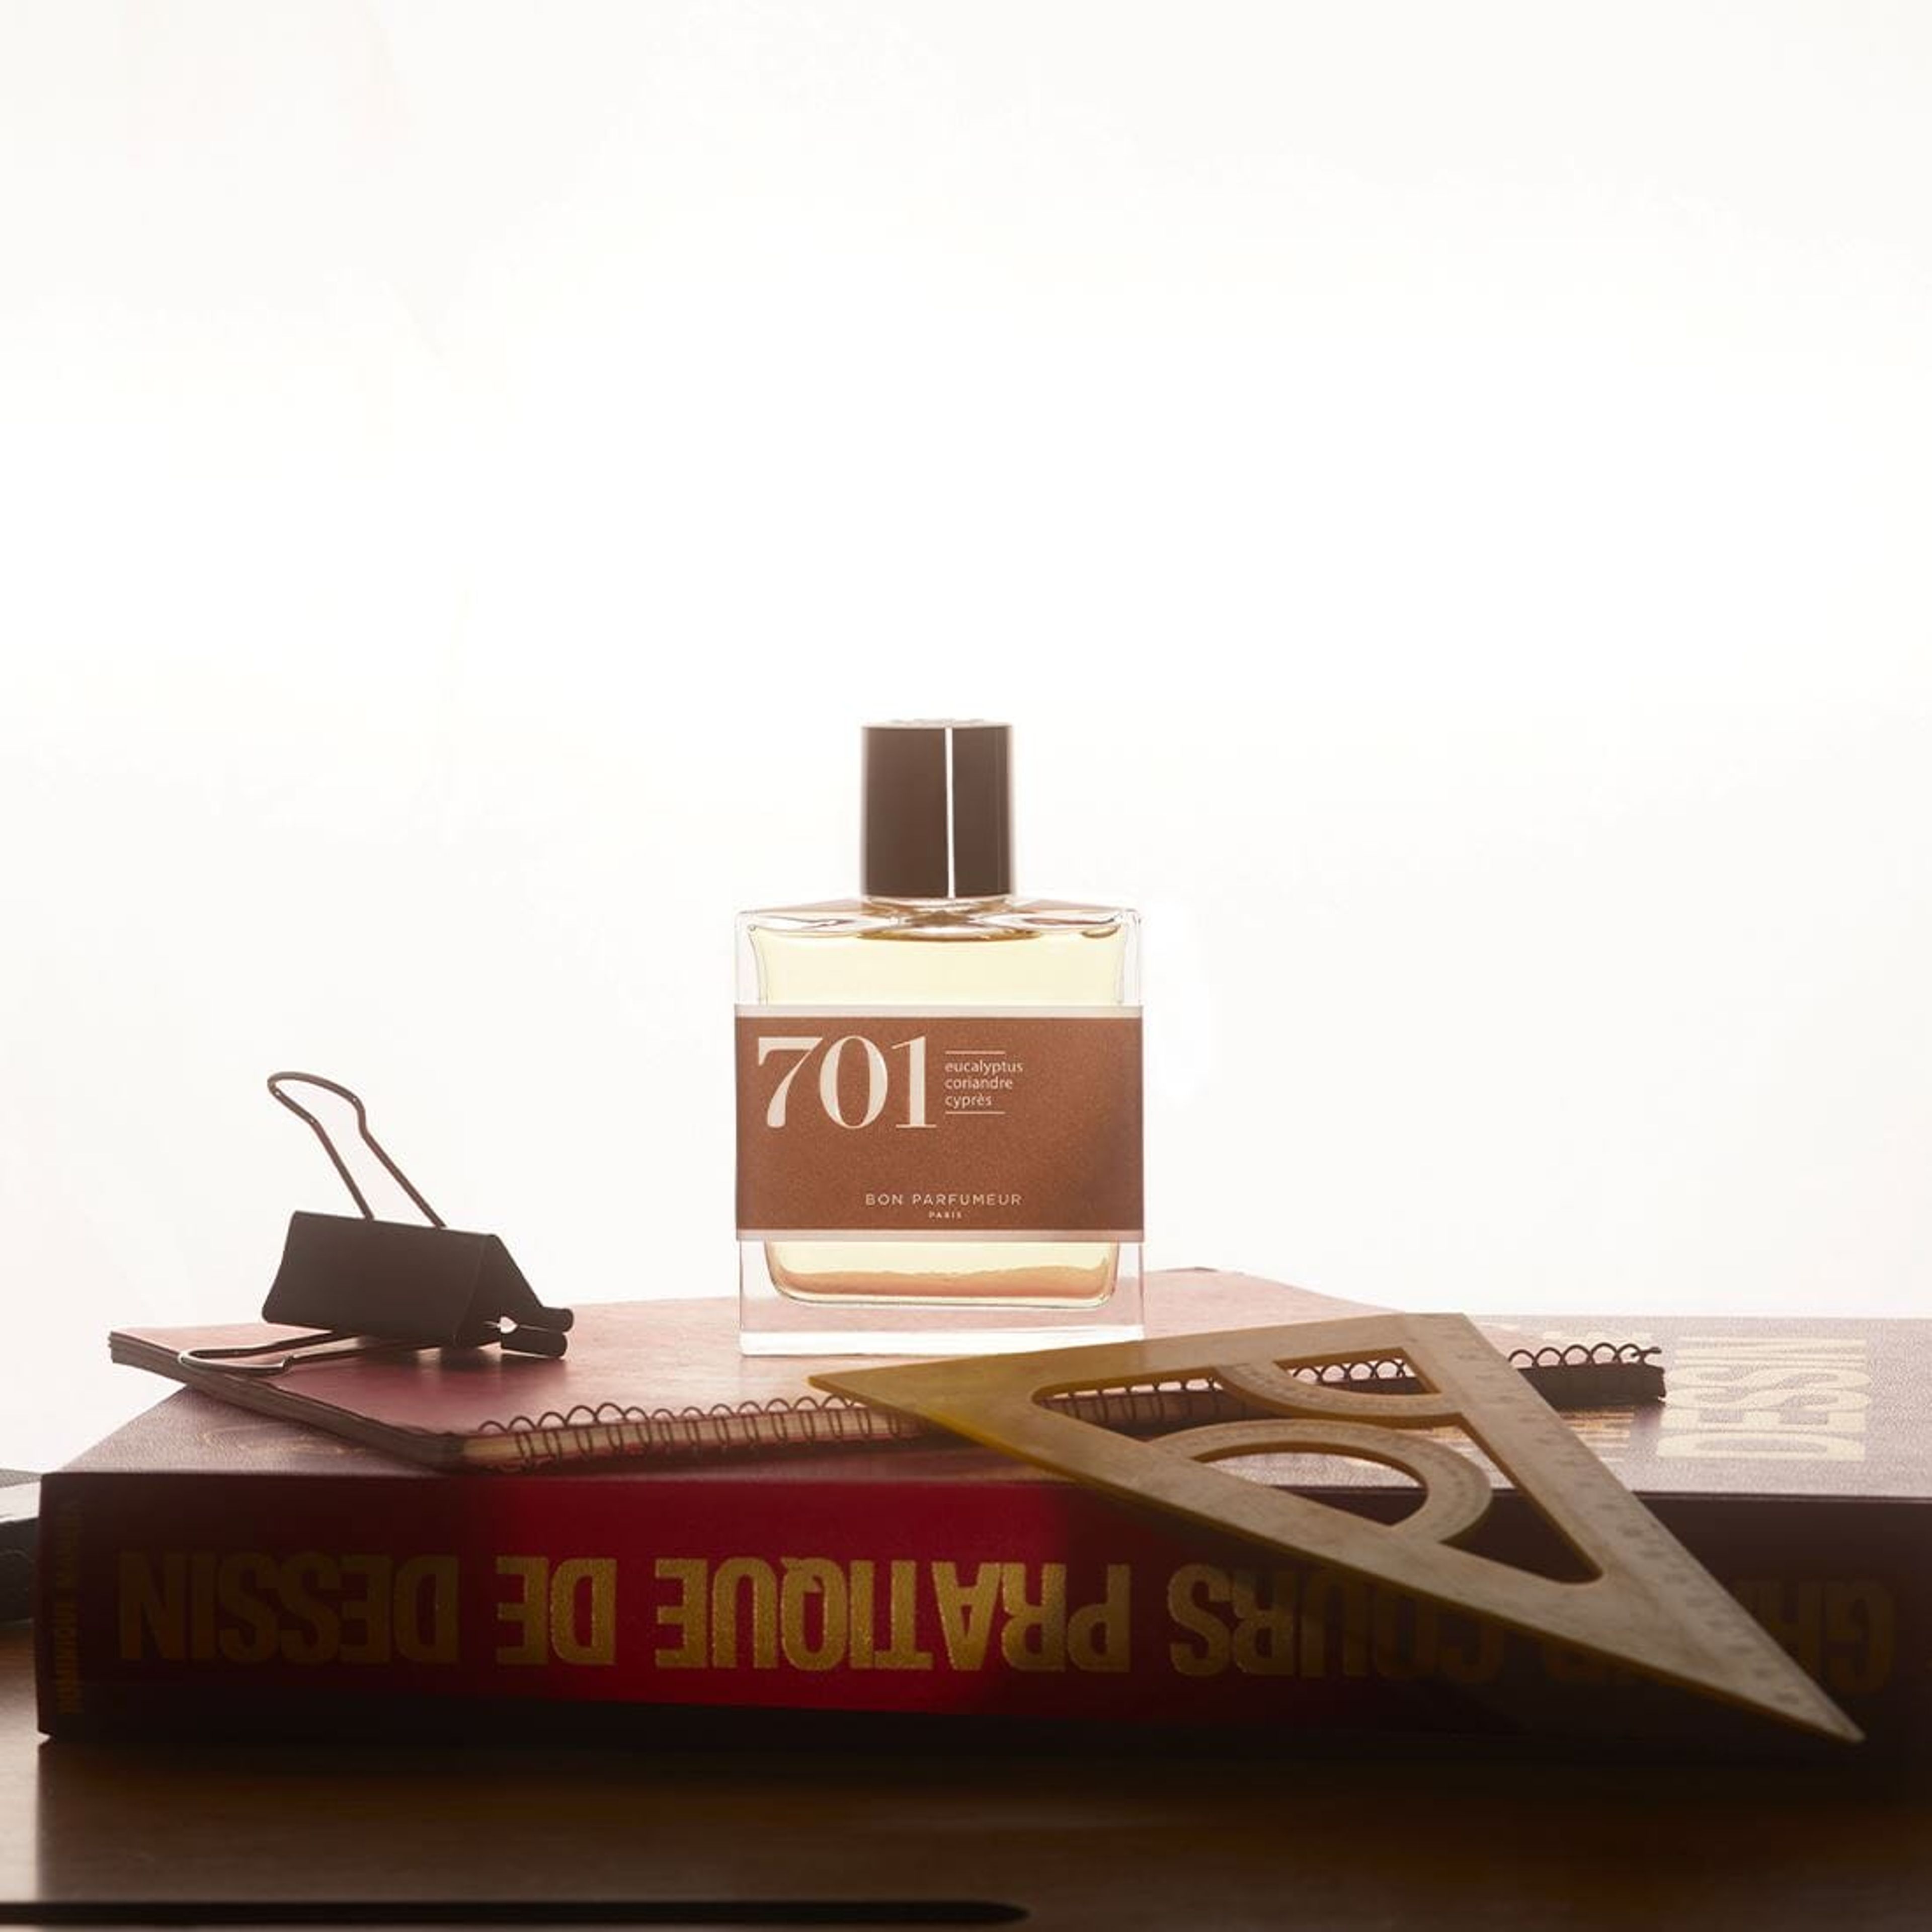 Eau de parfum 701 with eucalyptus, coriander and cypress